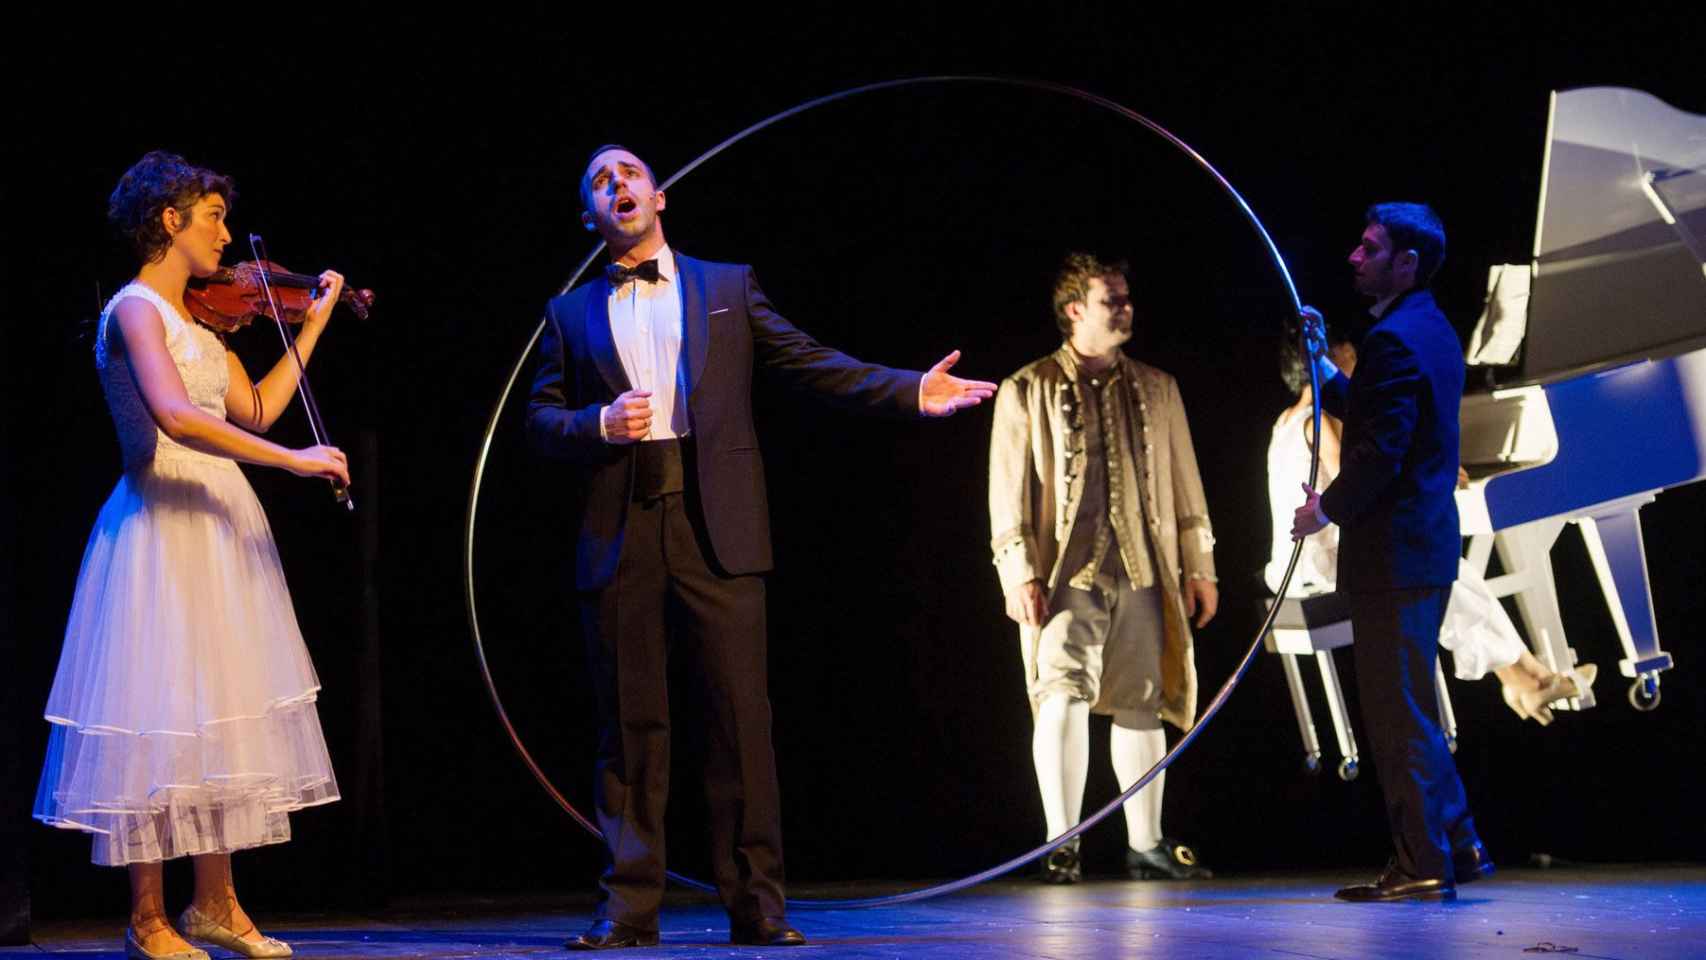 'Romeo y Julieta en el laberinto mágico' en el Gran Teatre del Liceu / Antoni Bofill